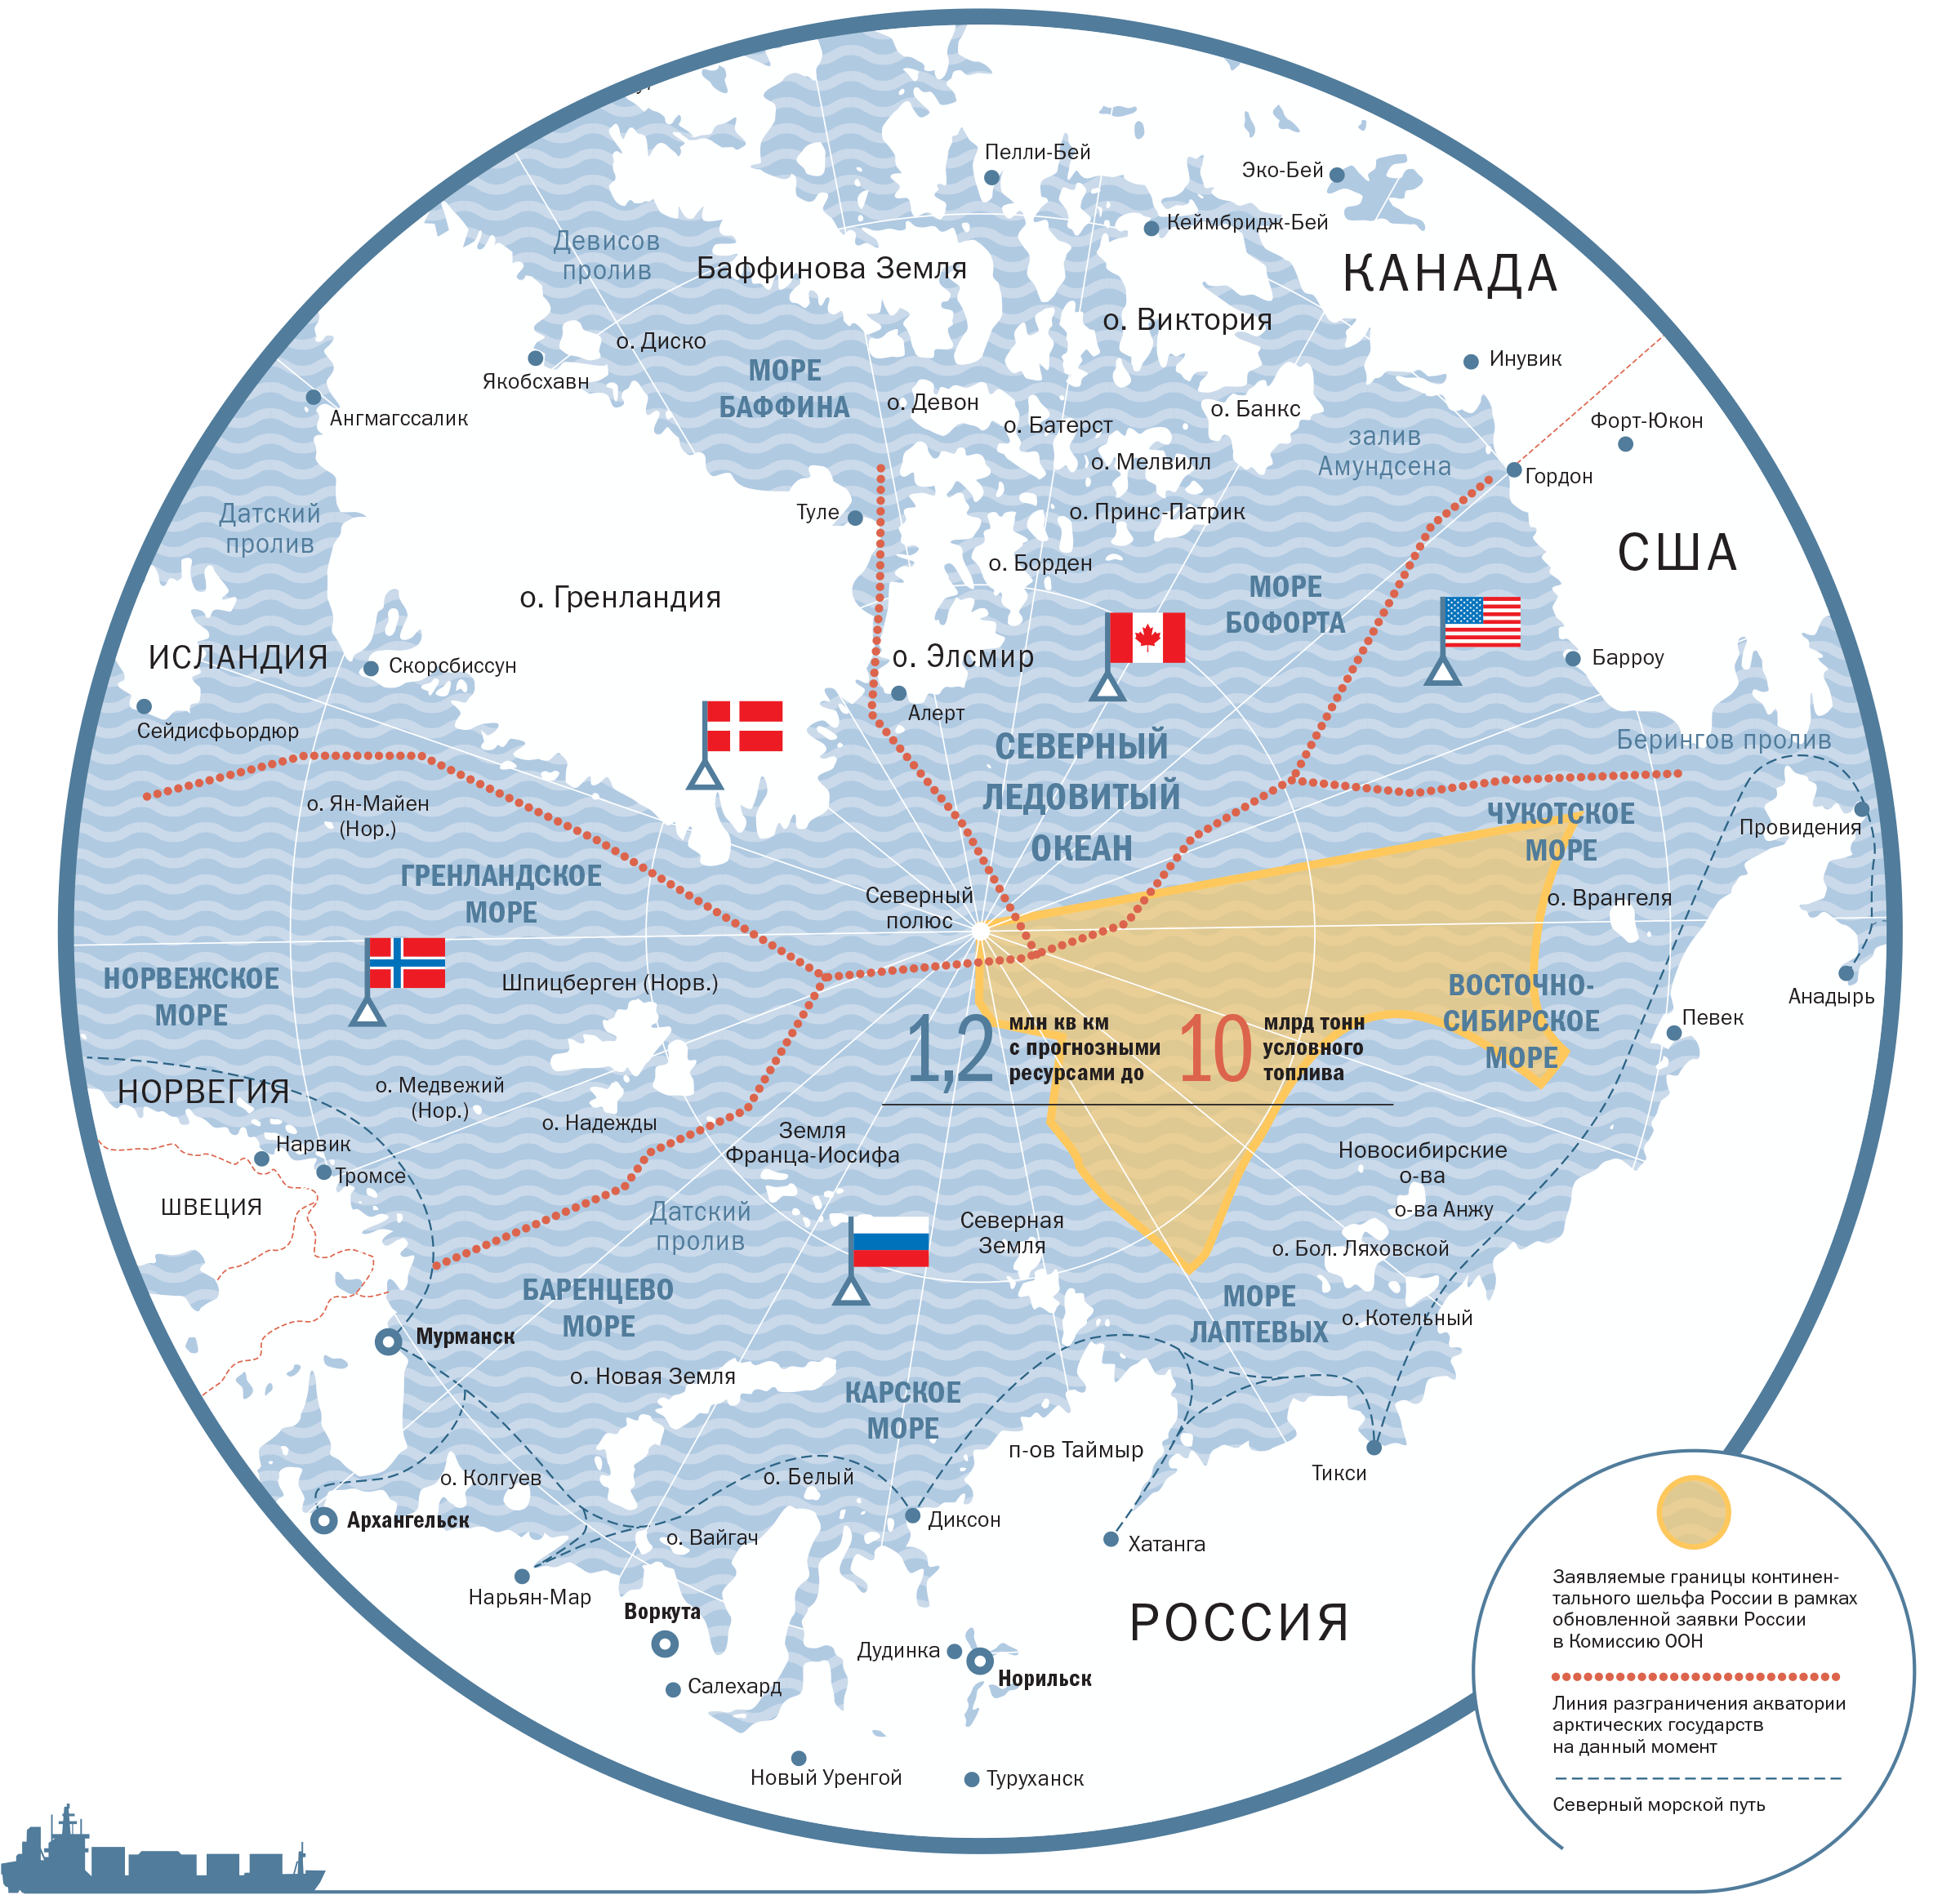 Полярный покажи на карте. Арктика на карте России границы. Карта Арктики с границами государств. Арктика Российская территория на карте.